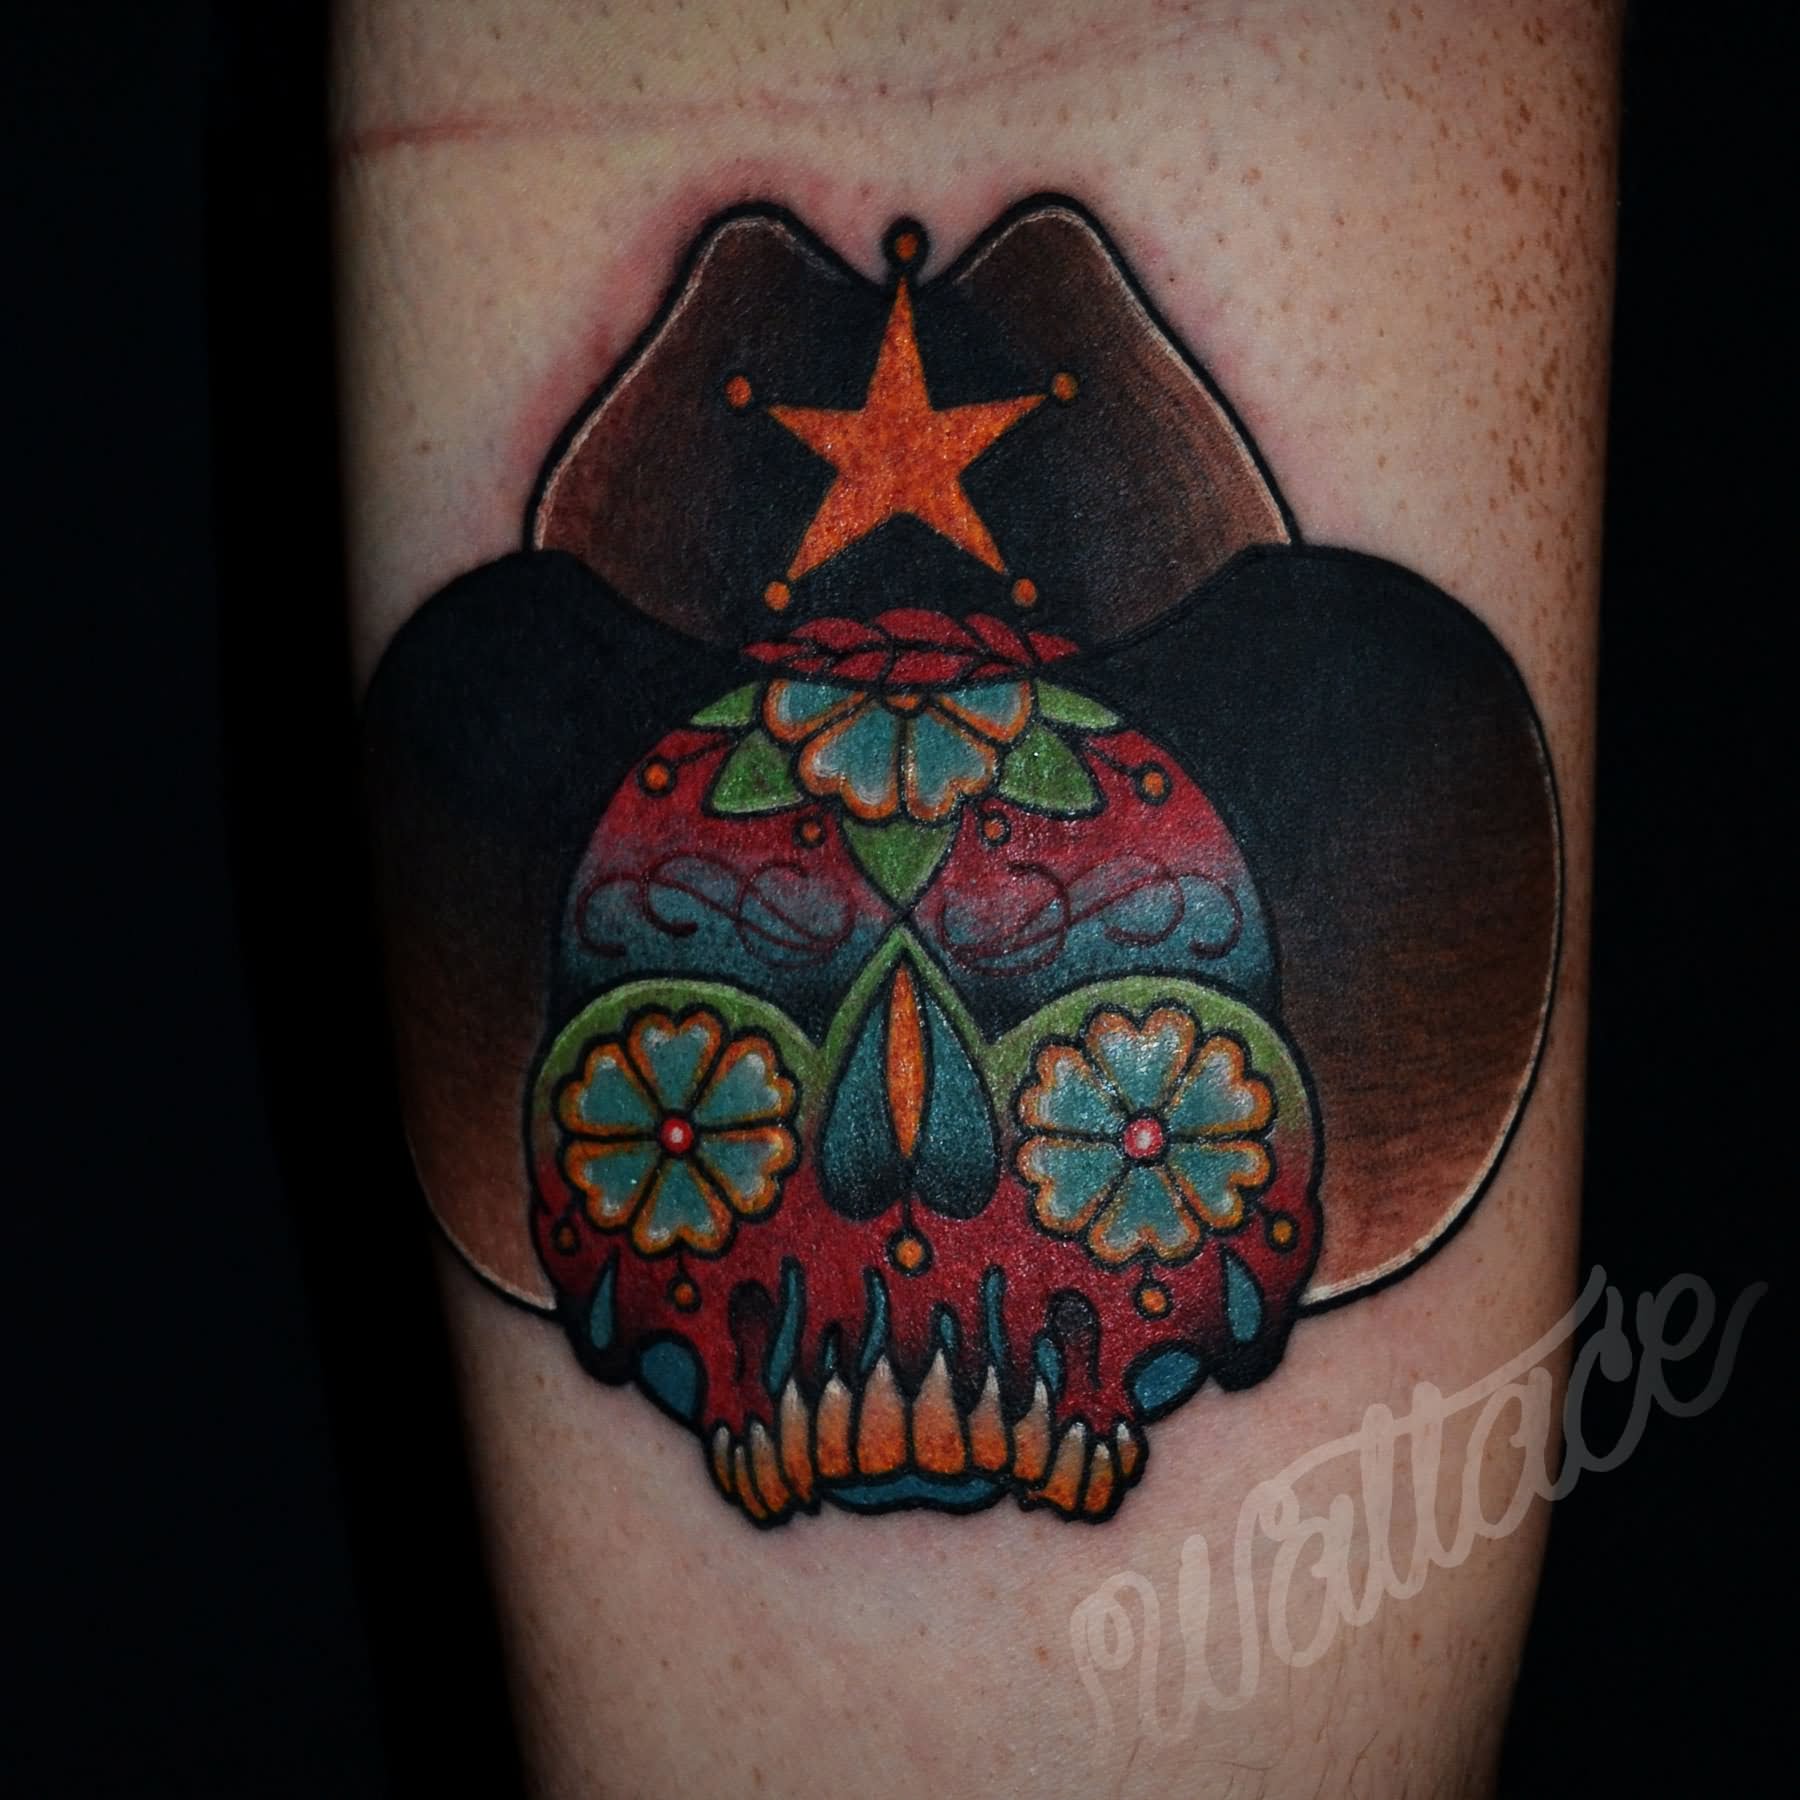 Cowboy Sugar Skull Tattoo Design For Arm